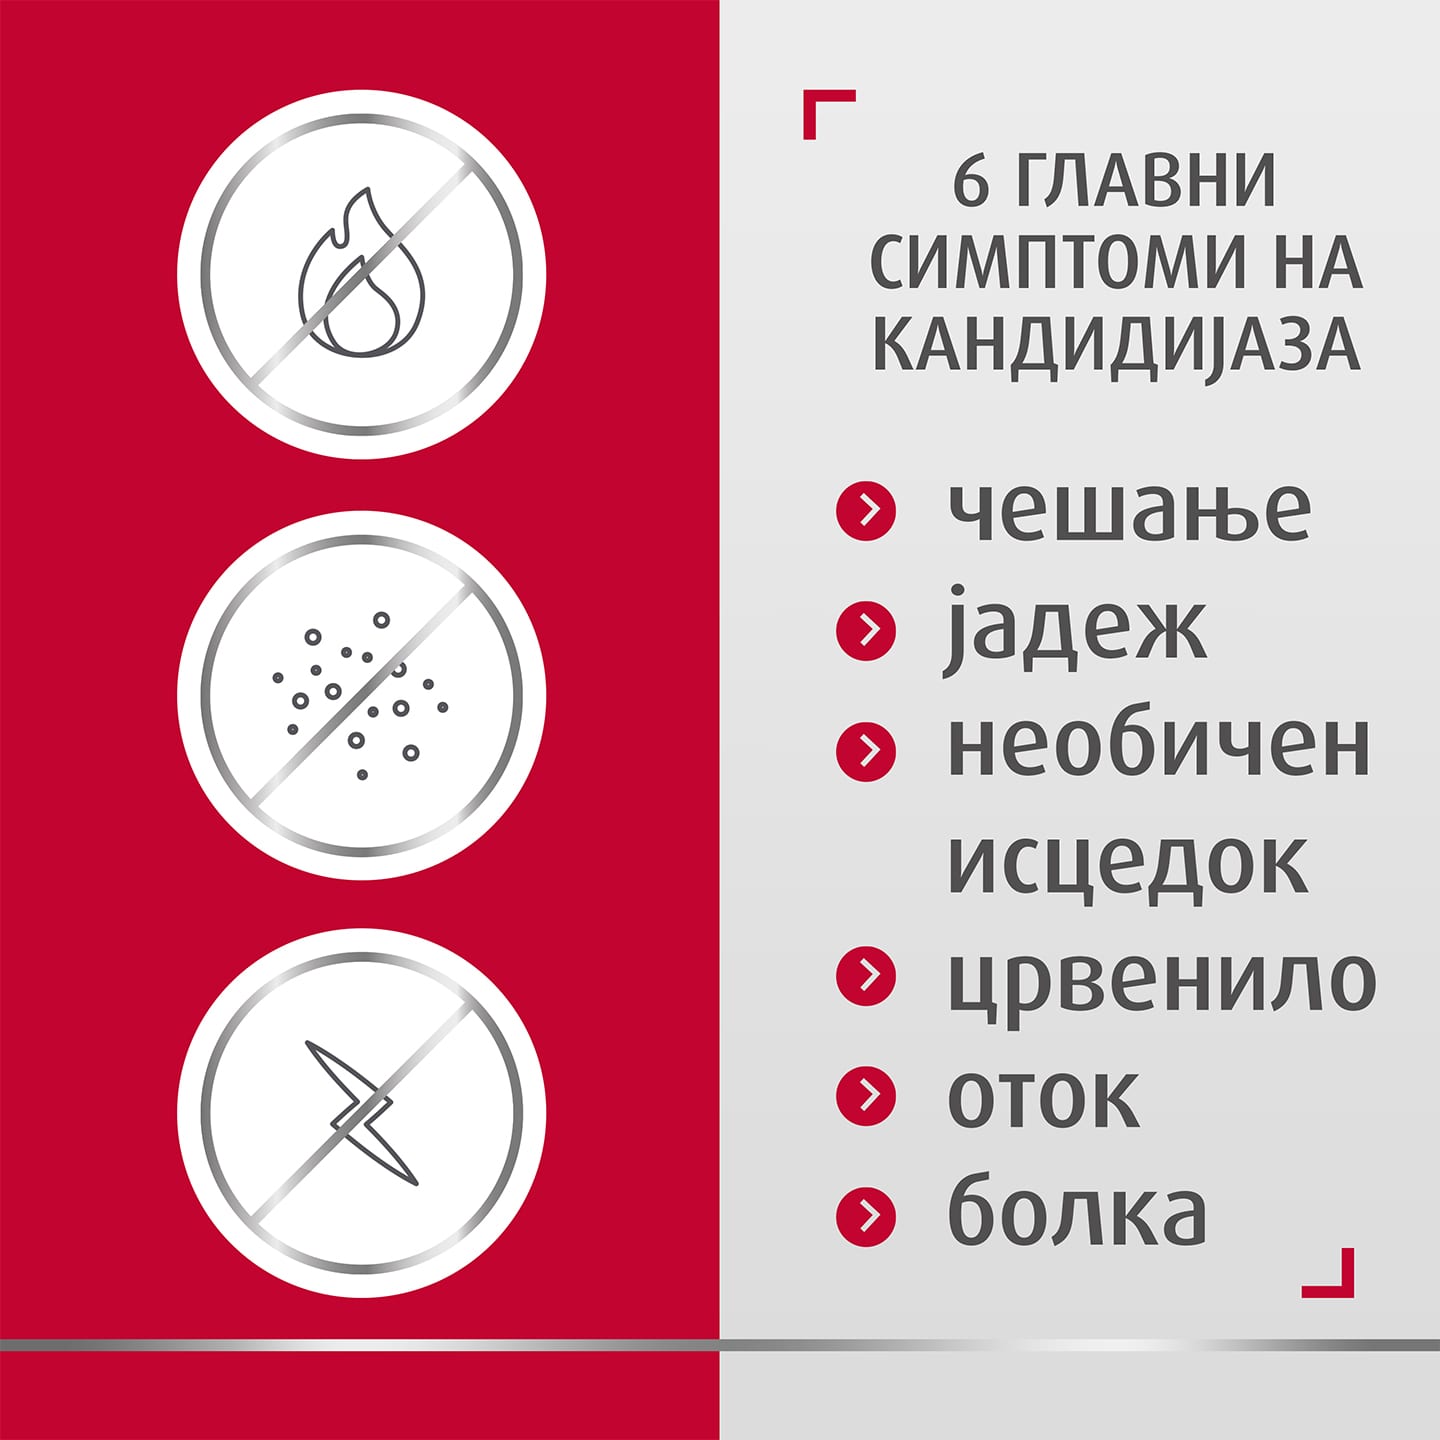 Три икони кои ги покажуваат придобивките од лекувањето со Canesten, со натпис десно: 6 главни симптоми на кандидијаза: чешање, горење, необичен исцедок, црвенило, оток, болка